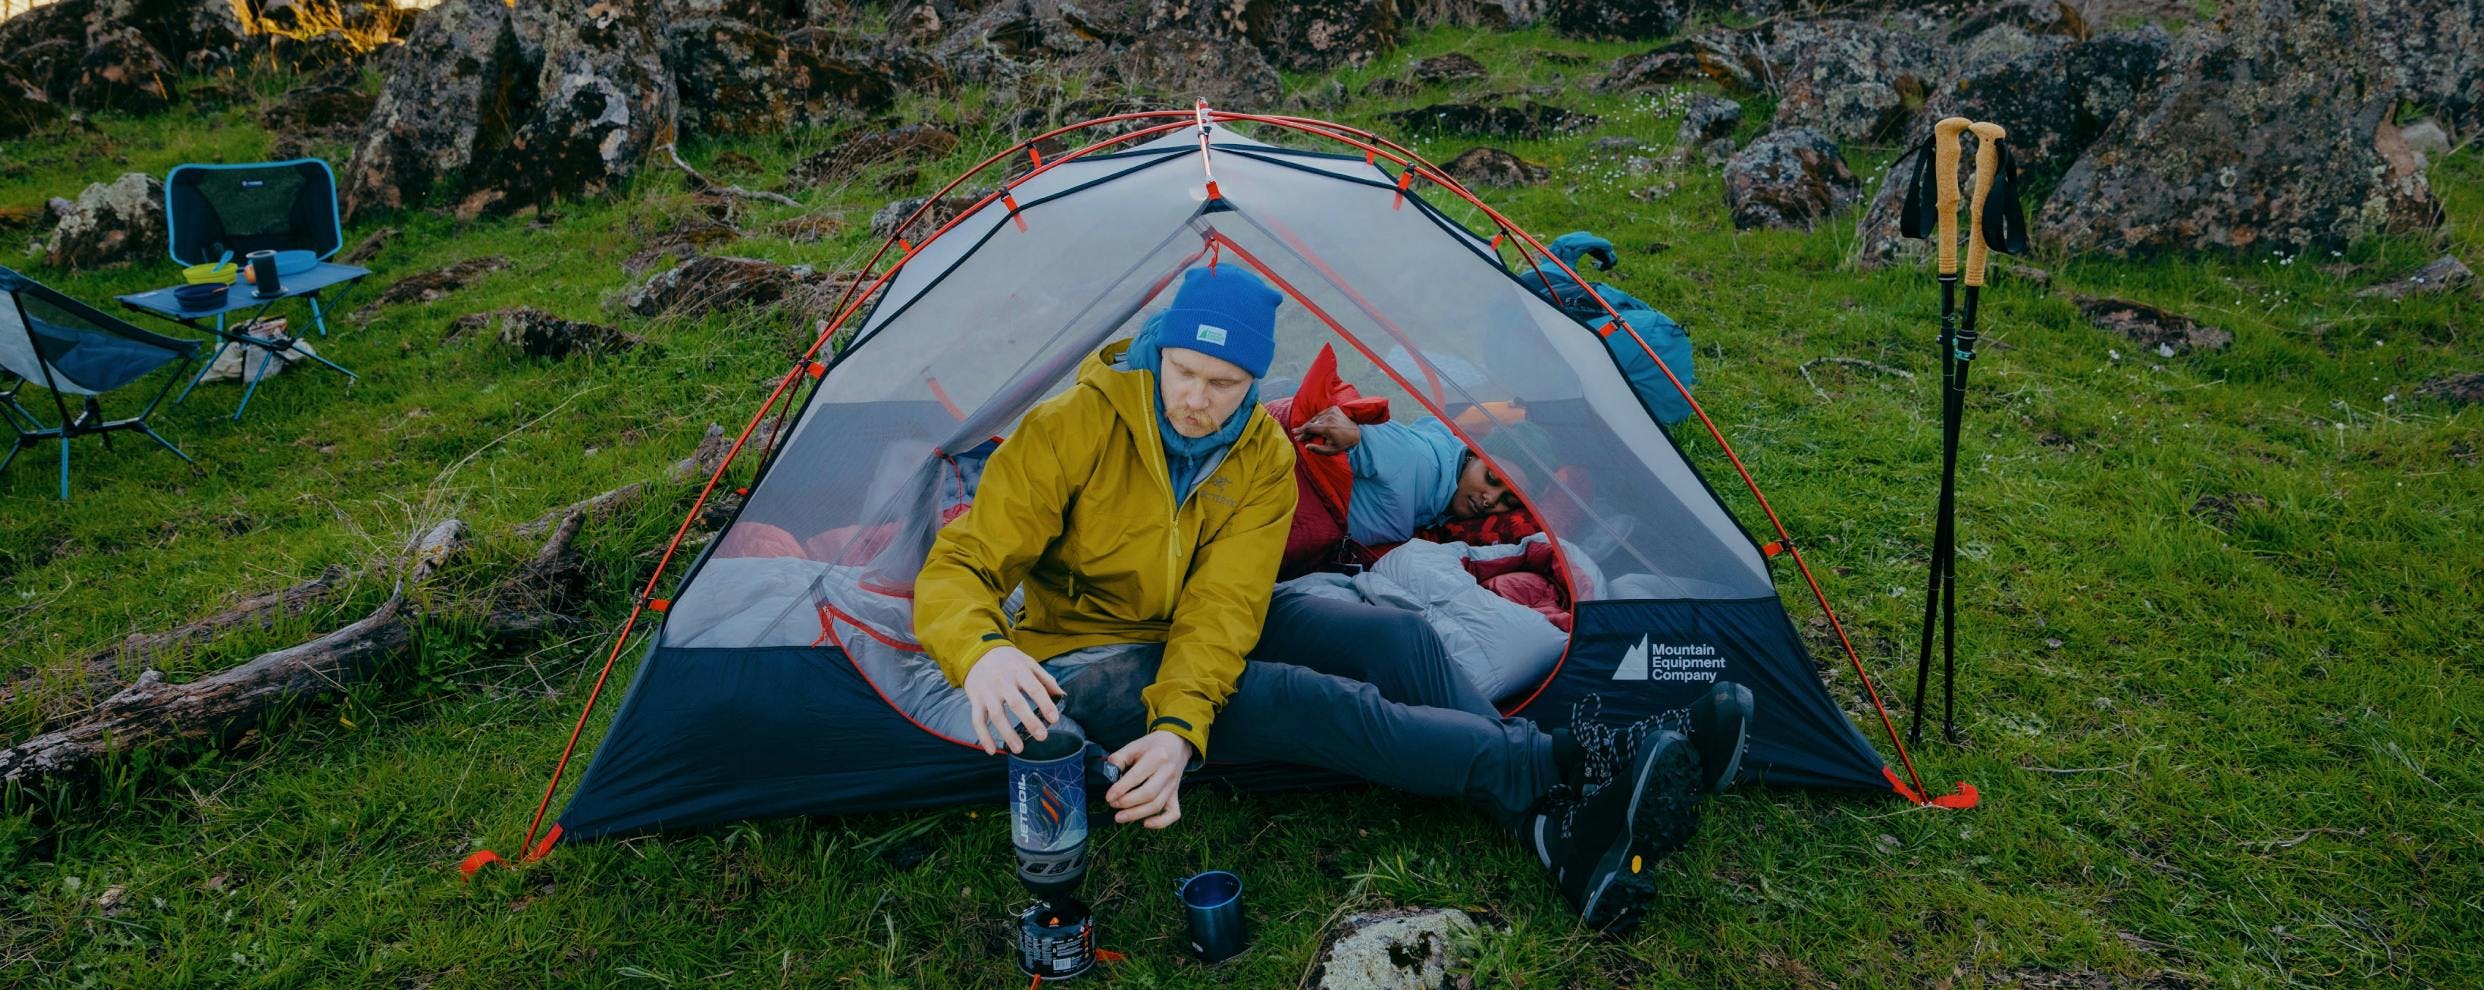 Trouvez l’abri parfait pour le camping en voiture ou les aventures en famille.